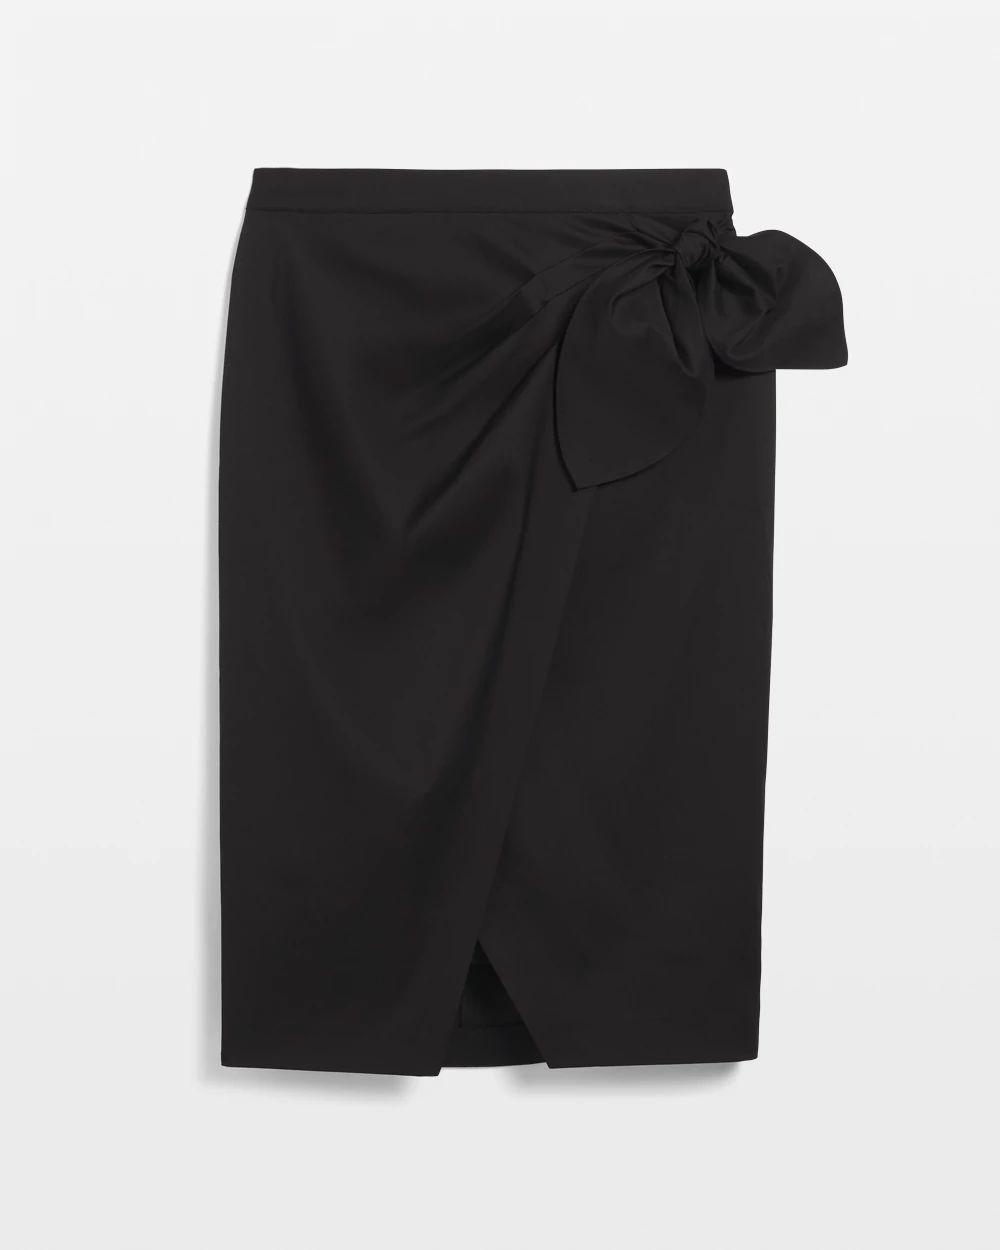 Sarong Wrap Skirt click to view larger image.